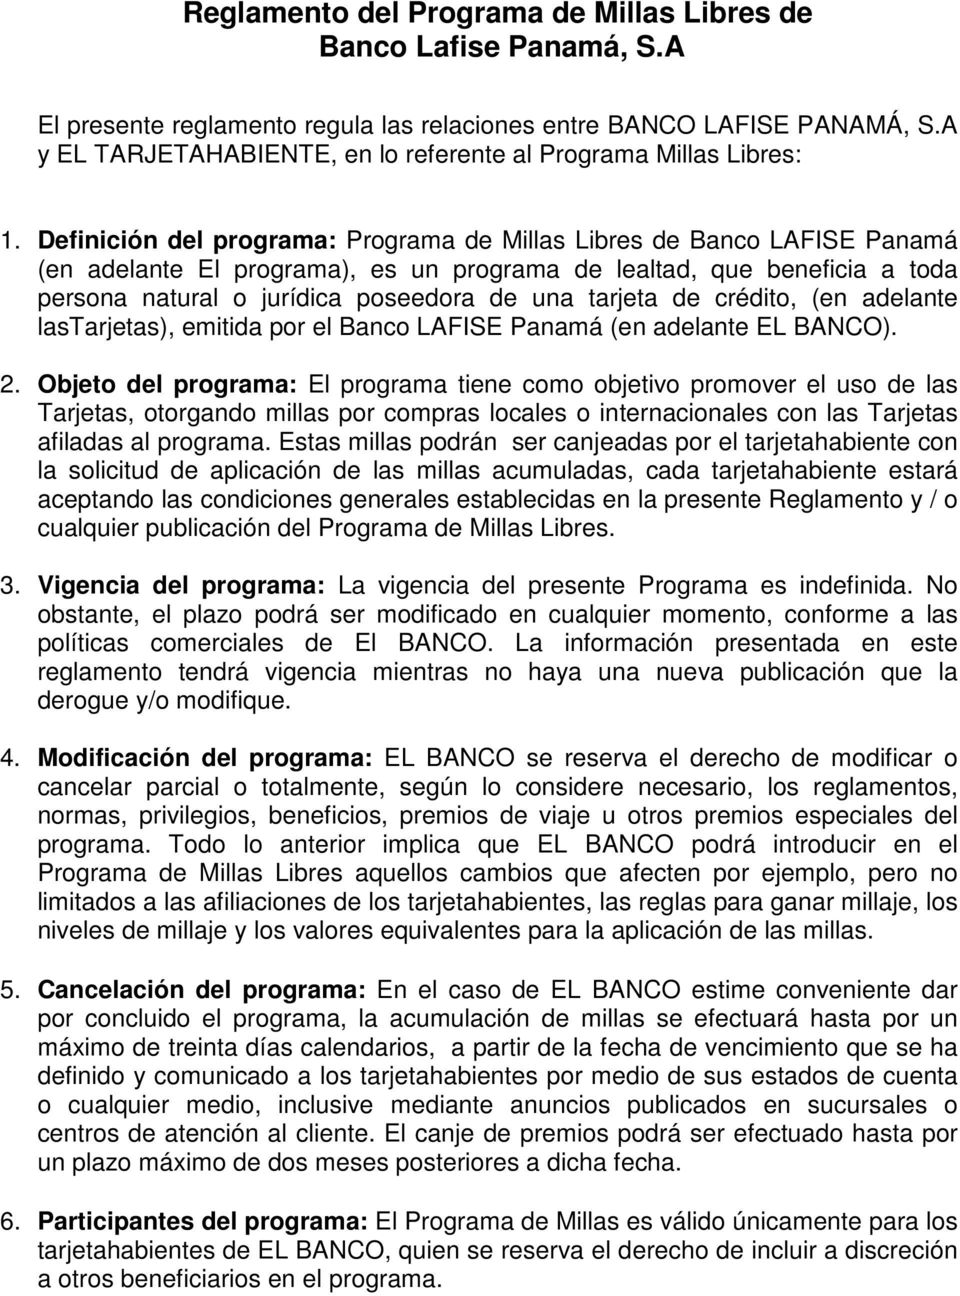 Definición del programa: Programa de Millas Libres de Banco LAFISE Panamá (en adelante El programa), es un programa de lealtad, que beneficia a toda persona natural o jurídica poseedora de una